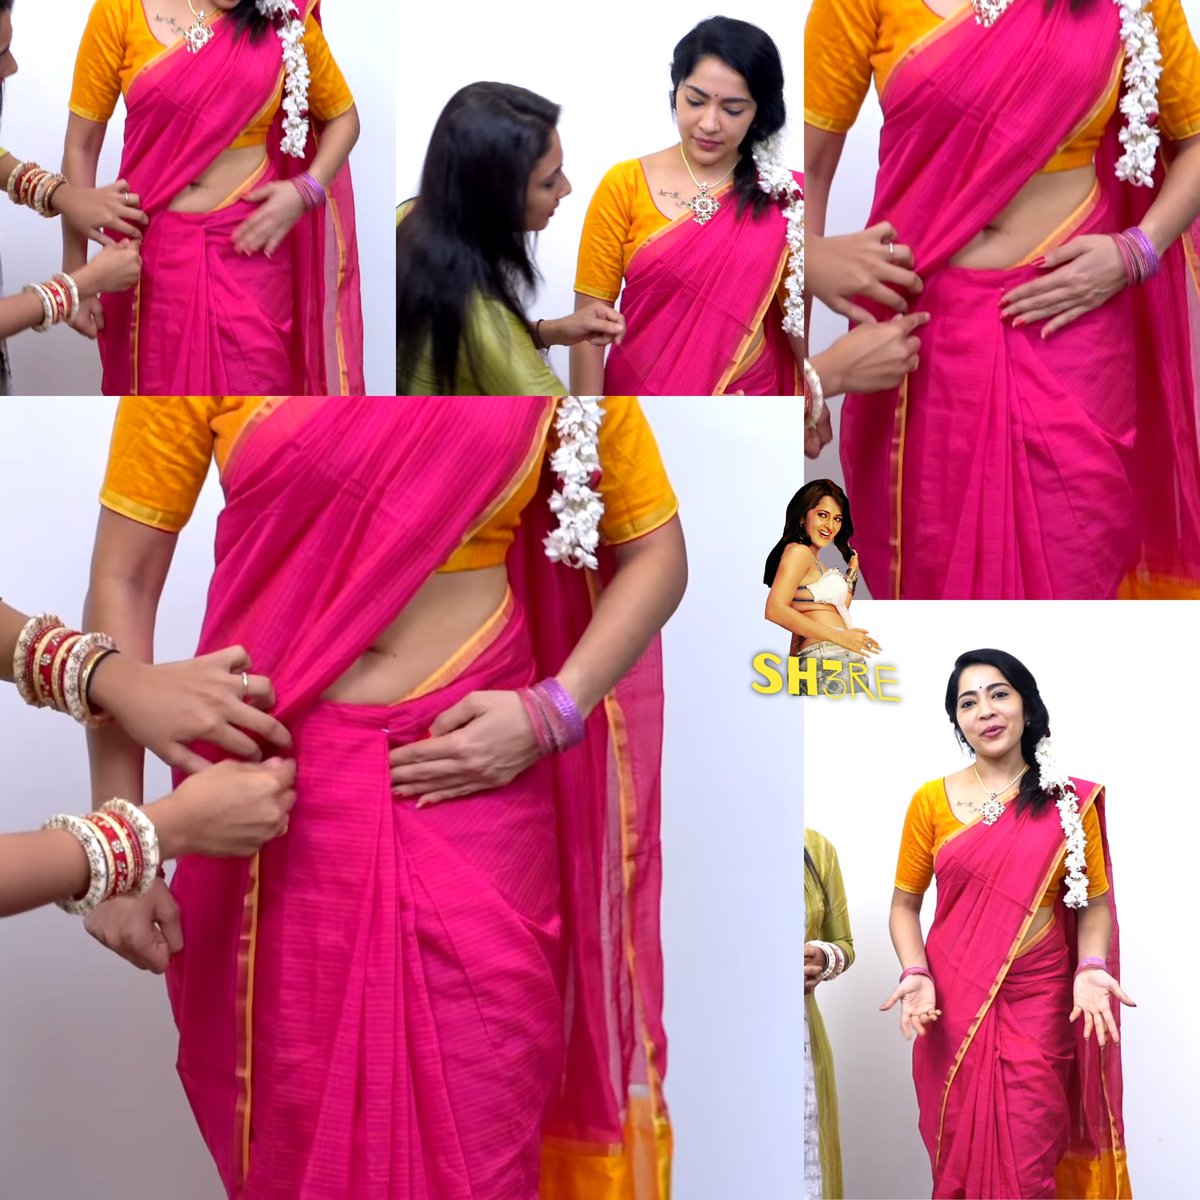 #ramyasubramanian thoppul show in recent saree drape video... 